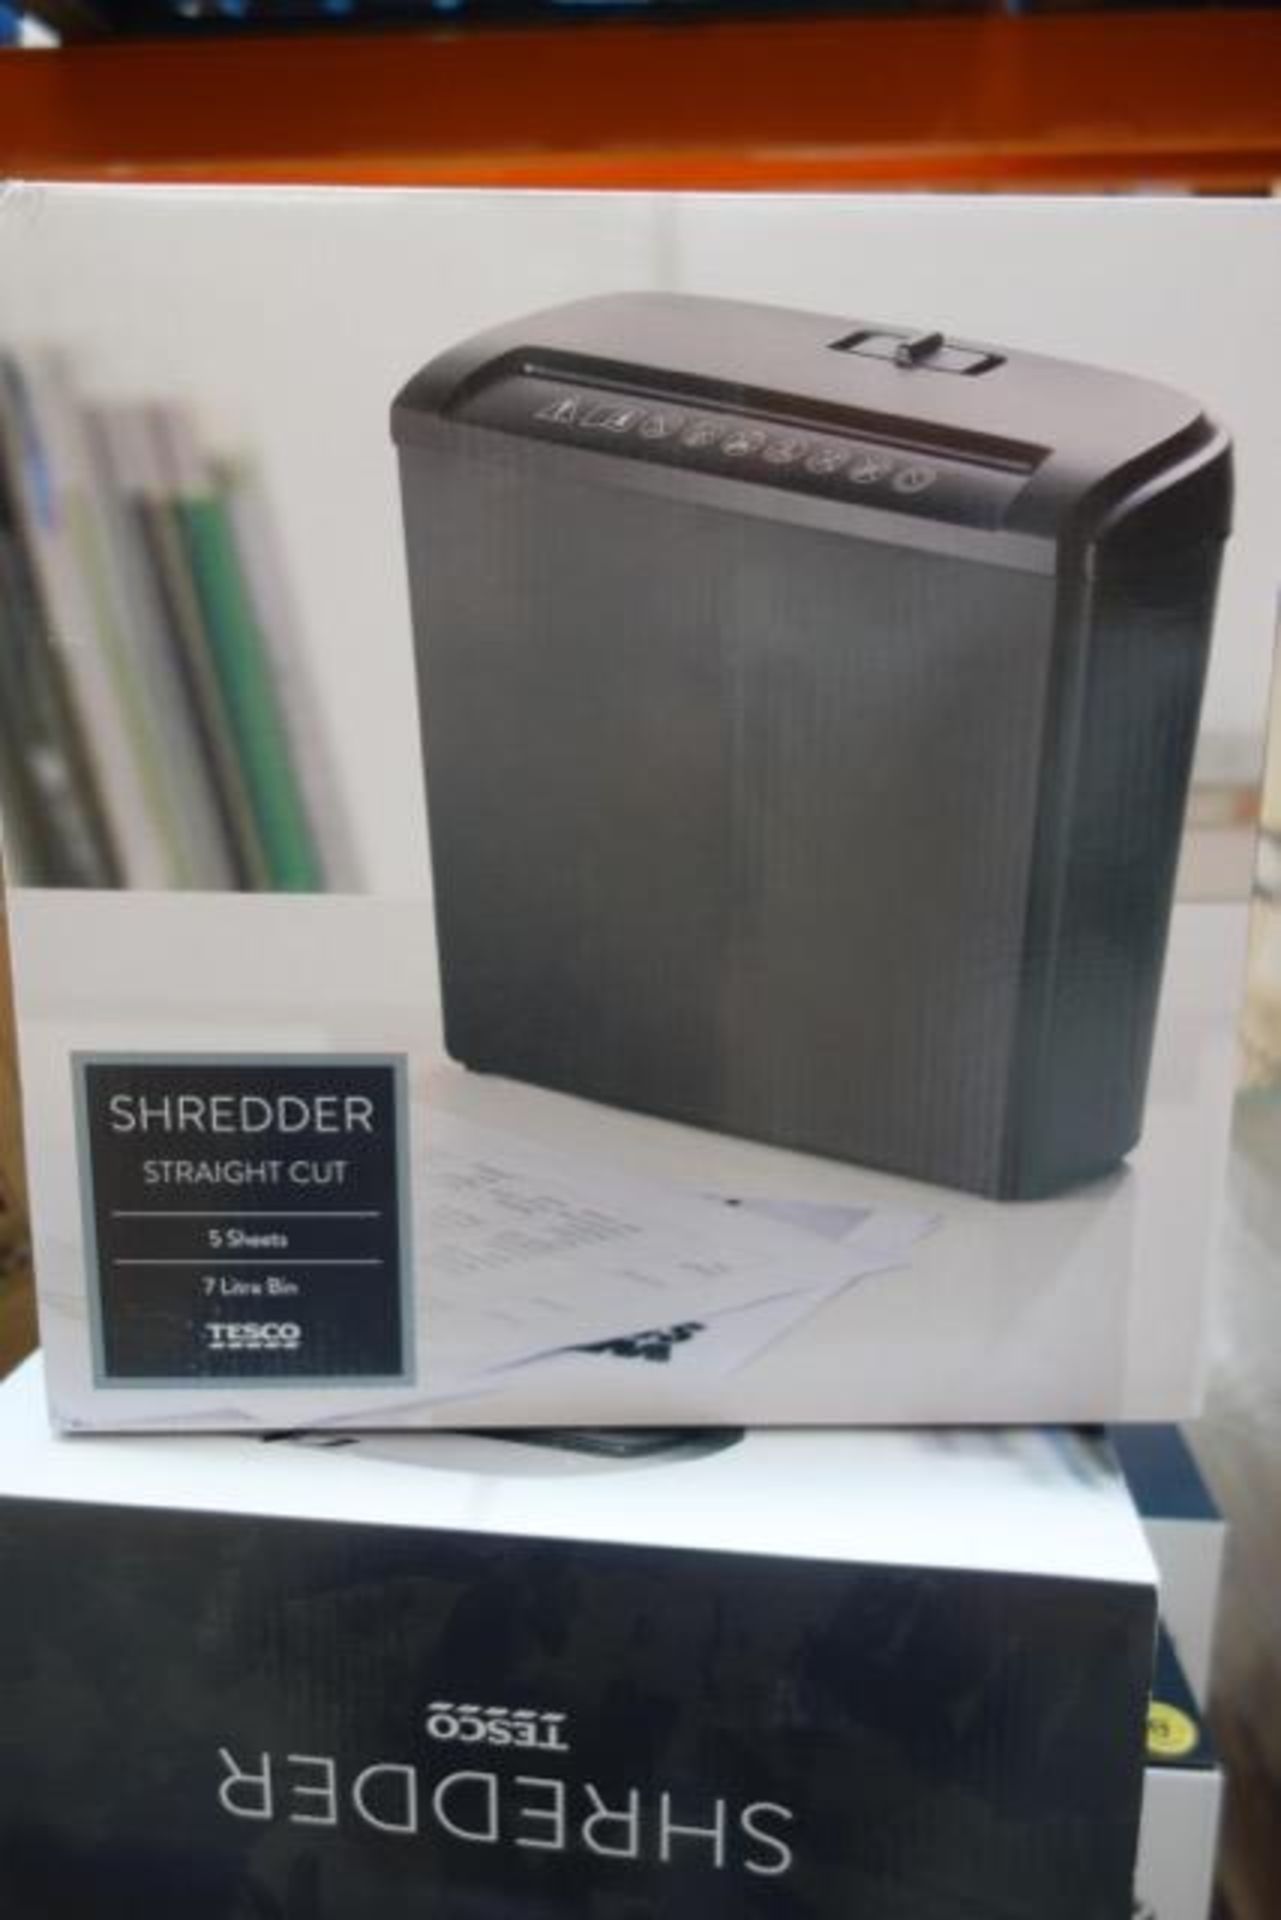 5 x Brand New - Tesco 5 Sheet 7 Litre Bin Paper Shredders - Image 2 of 2